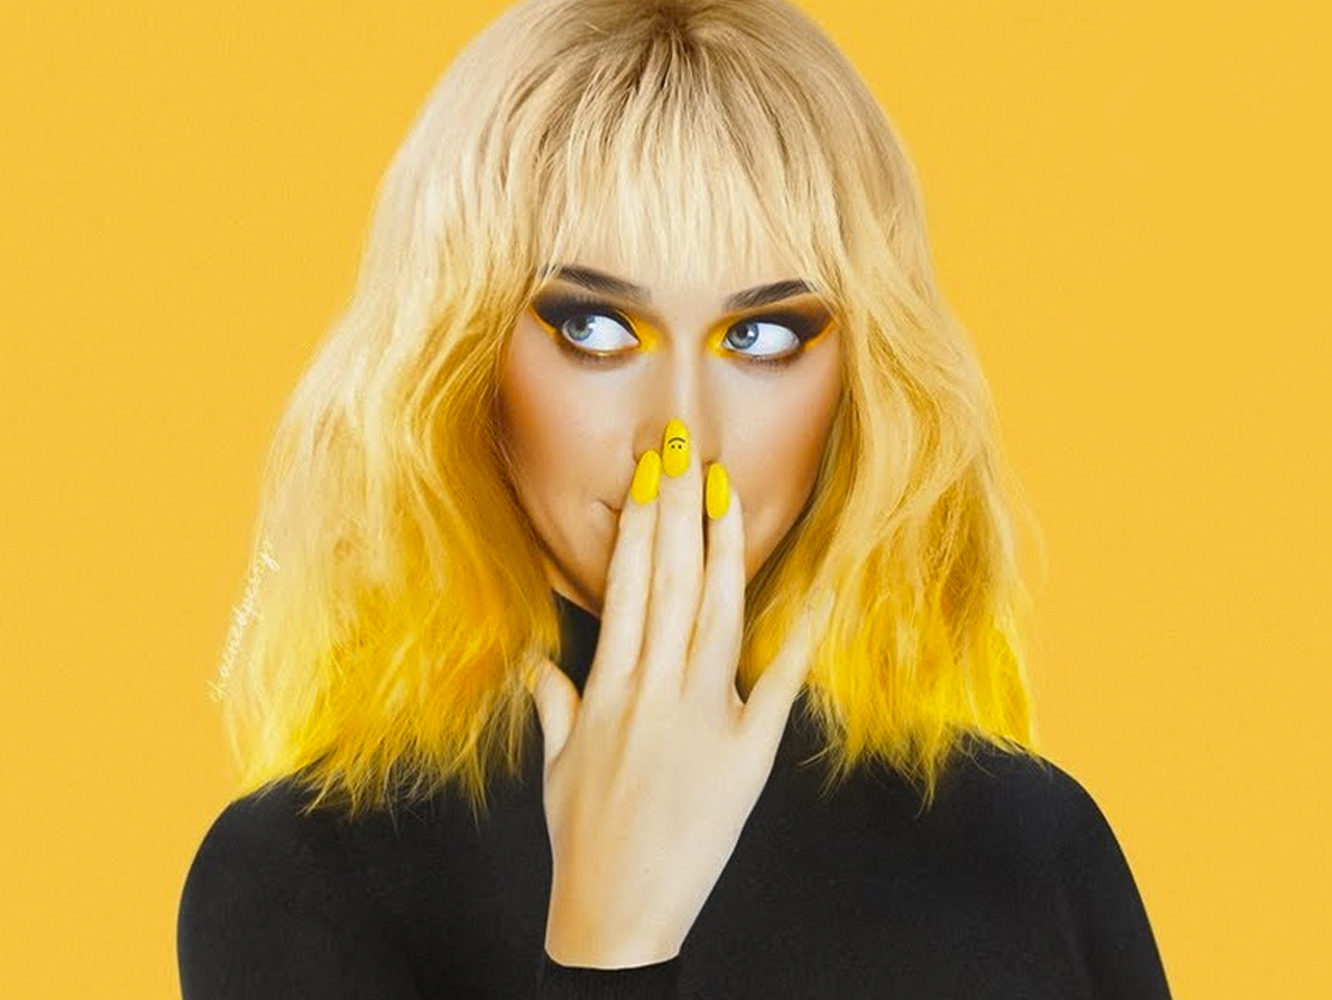  Katy Perry habla de superación en ‘Smile’, la canción que titula su nuevo álbum